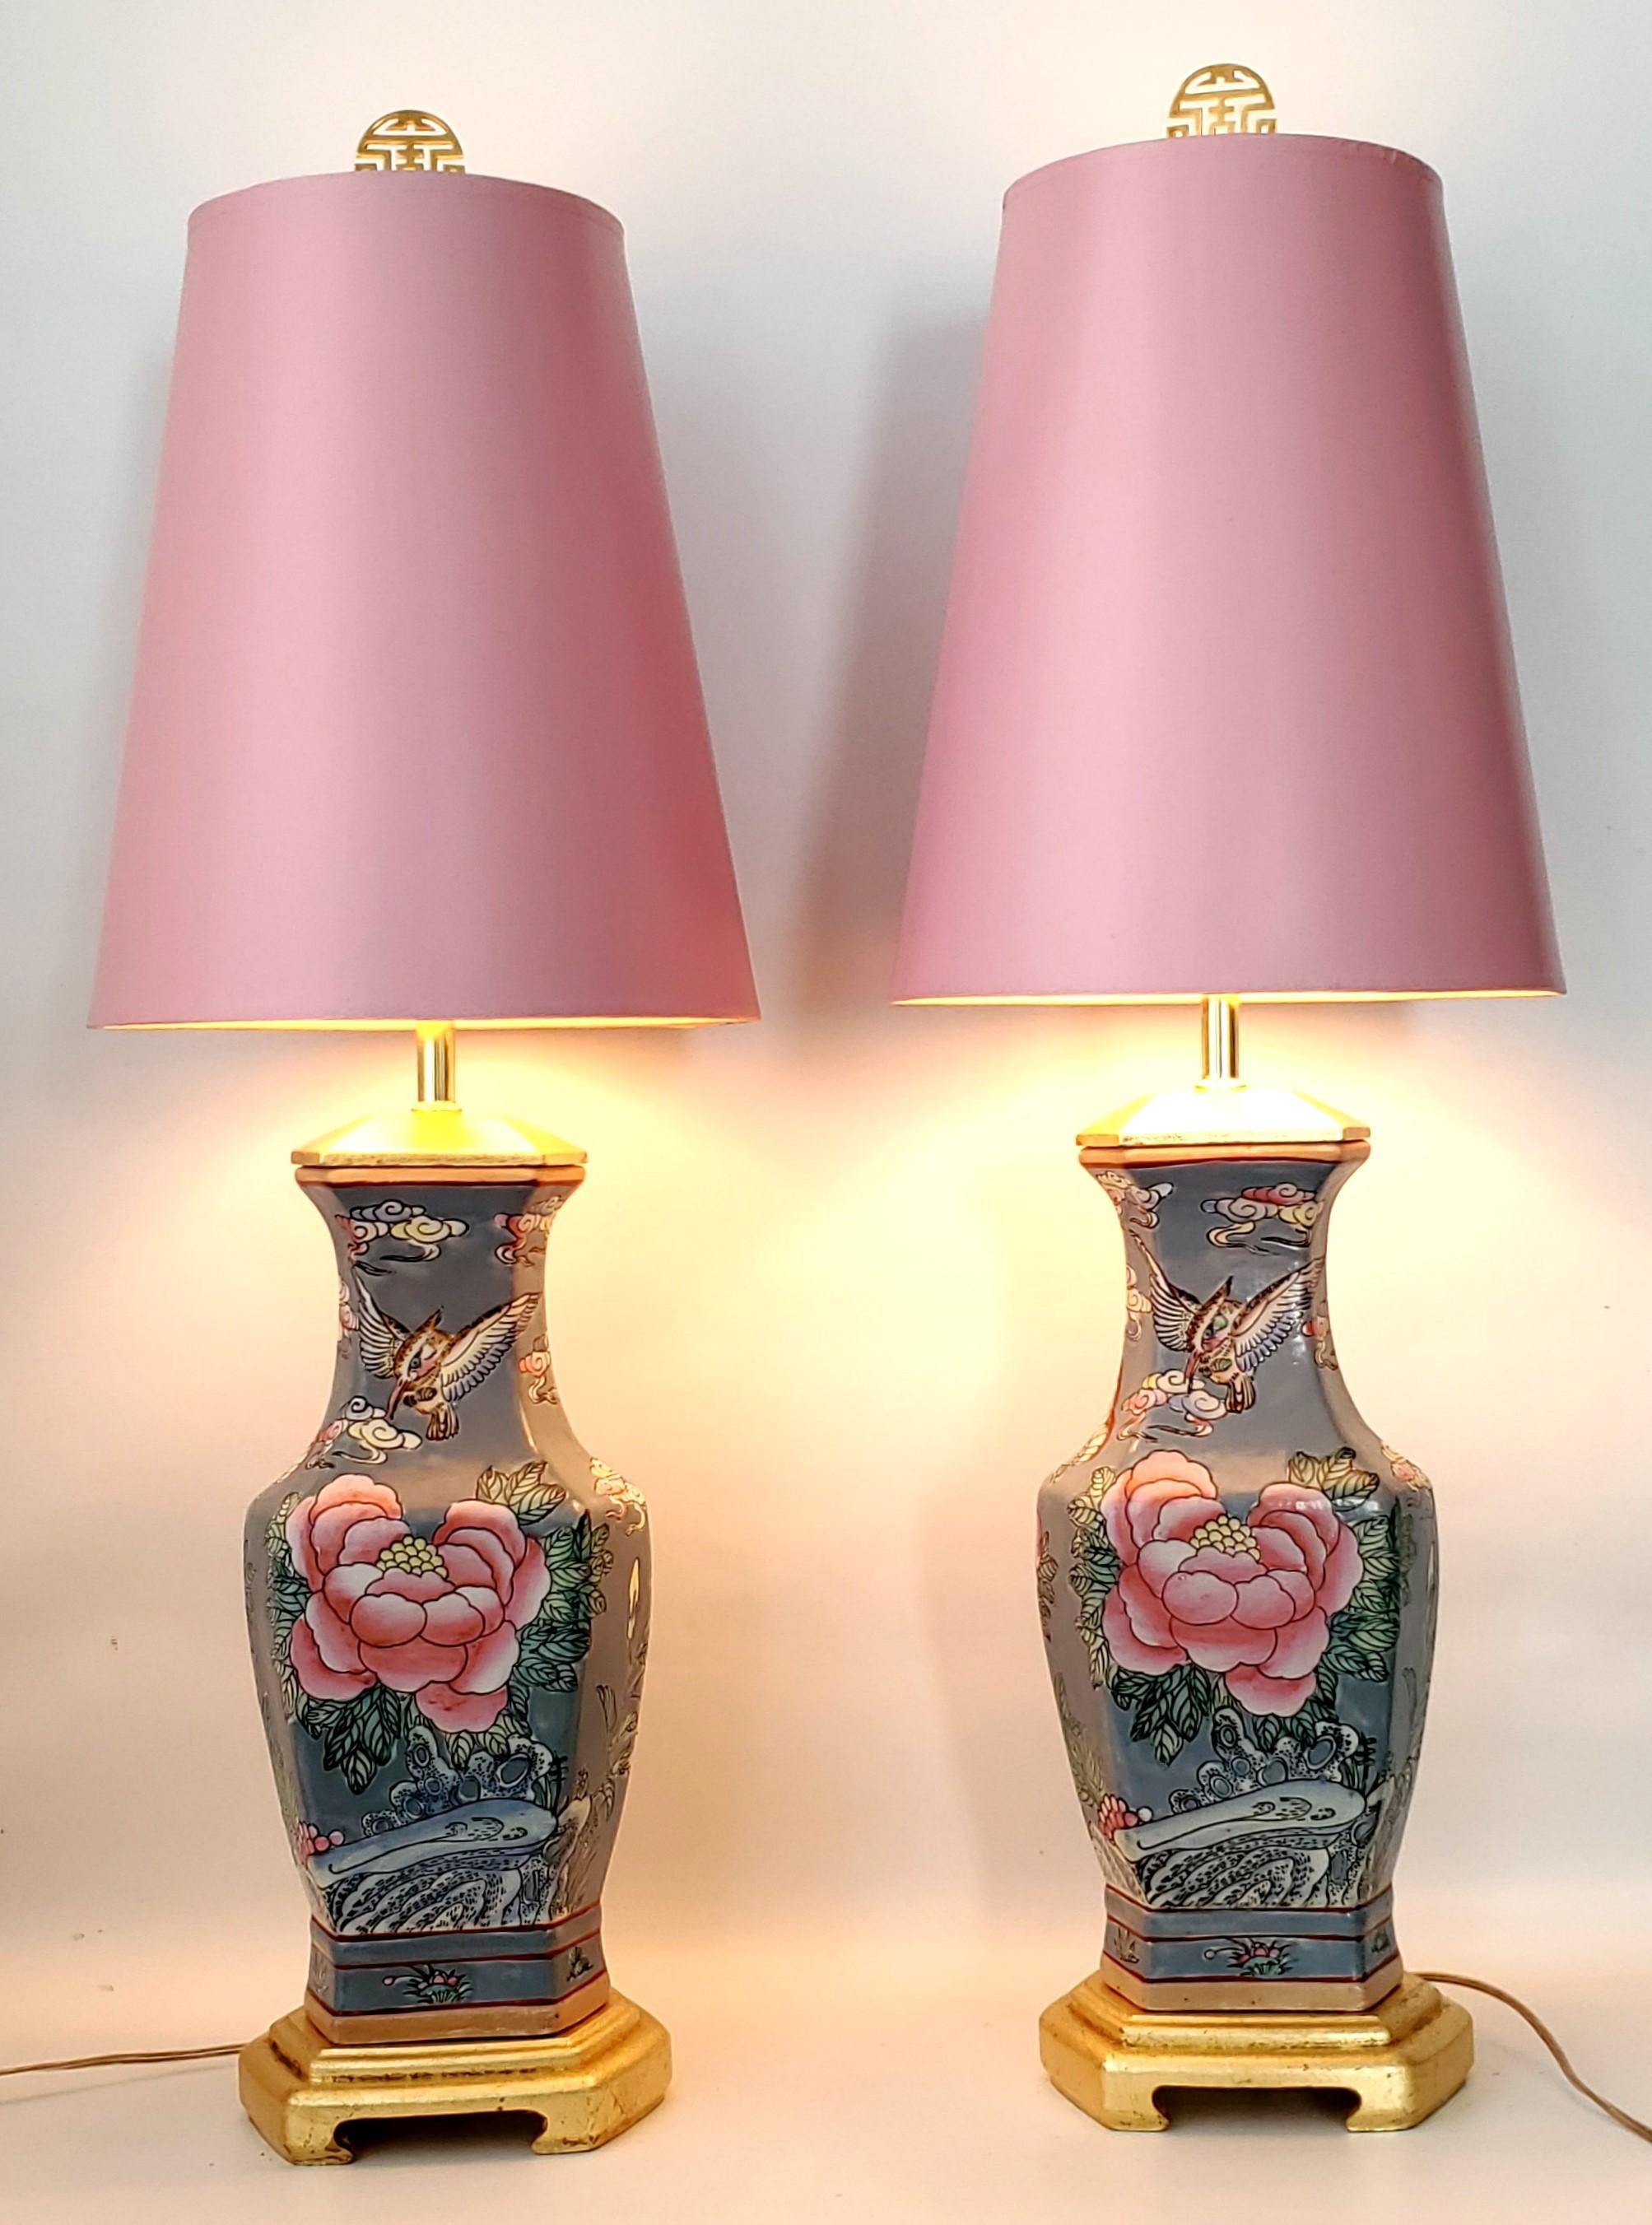 Paire de lampes de table vintage en porcelaine chinoise avec abat-jour rose vintage. 
Le corps des lampes est de couleur gris/bleu avec des roses et des papillons roses sur le devant et des fleurs et des papillons lavande sur l'arrière. Ancien